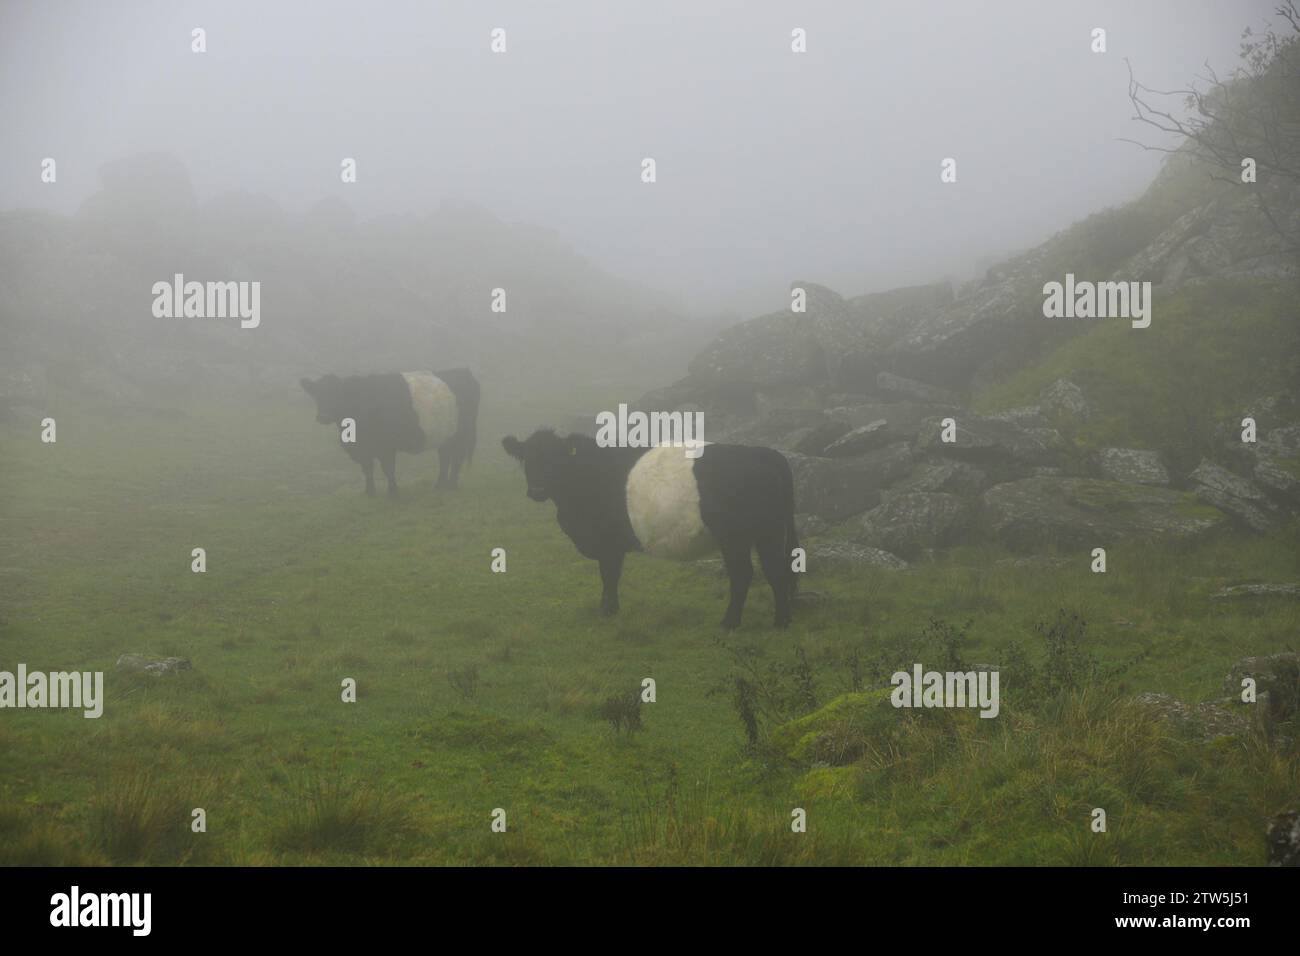 Kühe stehen passiv und warten geduldig darauf, dass sich der Nebel löst, bevor sie den täglichen Alltag fortsetzen. Ähnlich verhalten sich die Menschen bei Nebel. Stockfoto